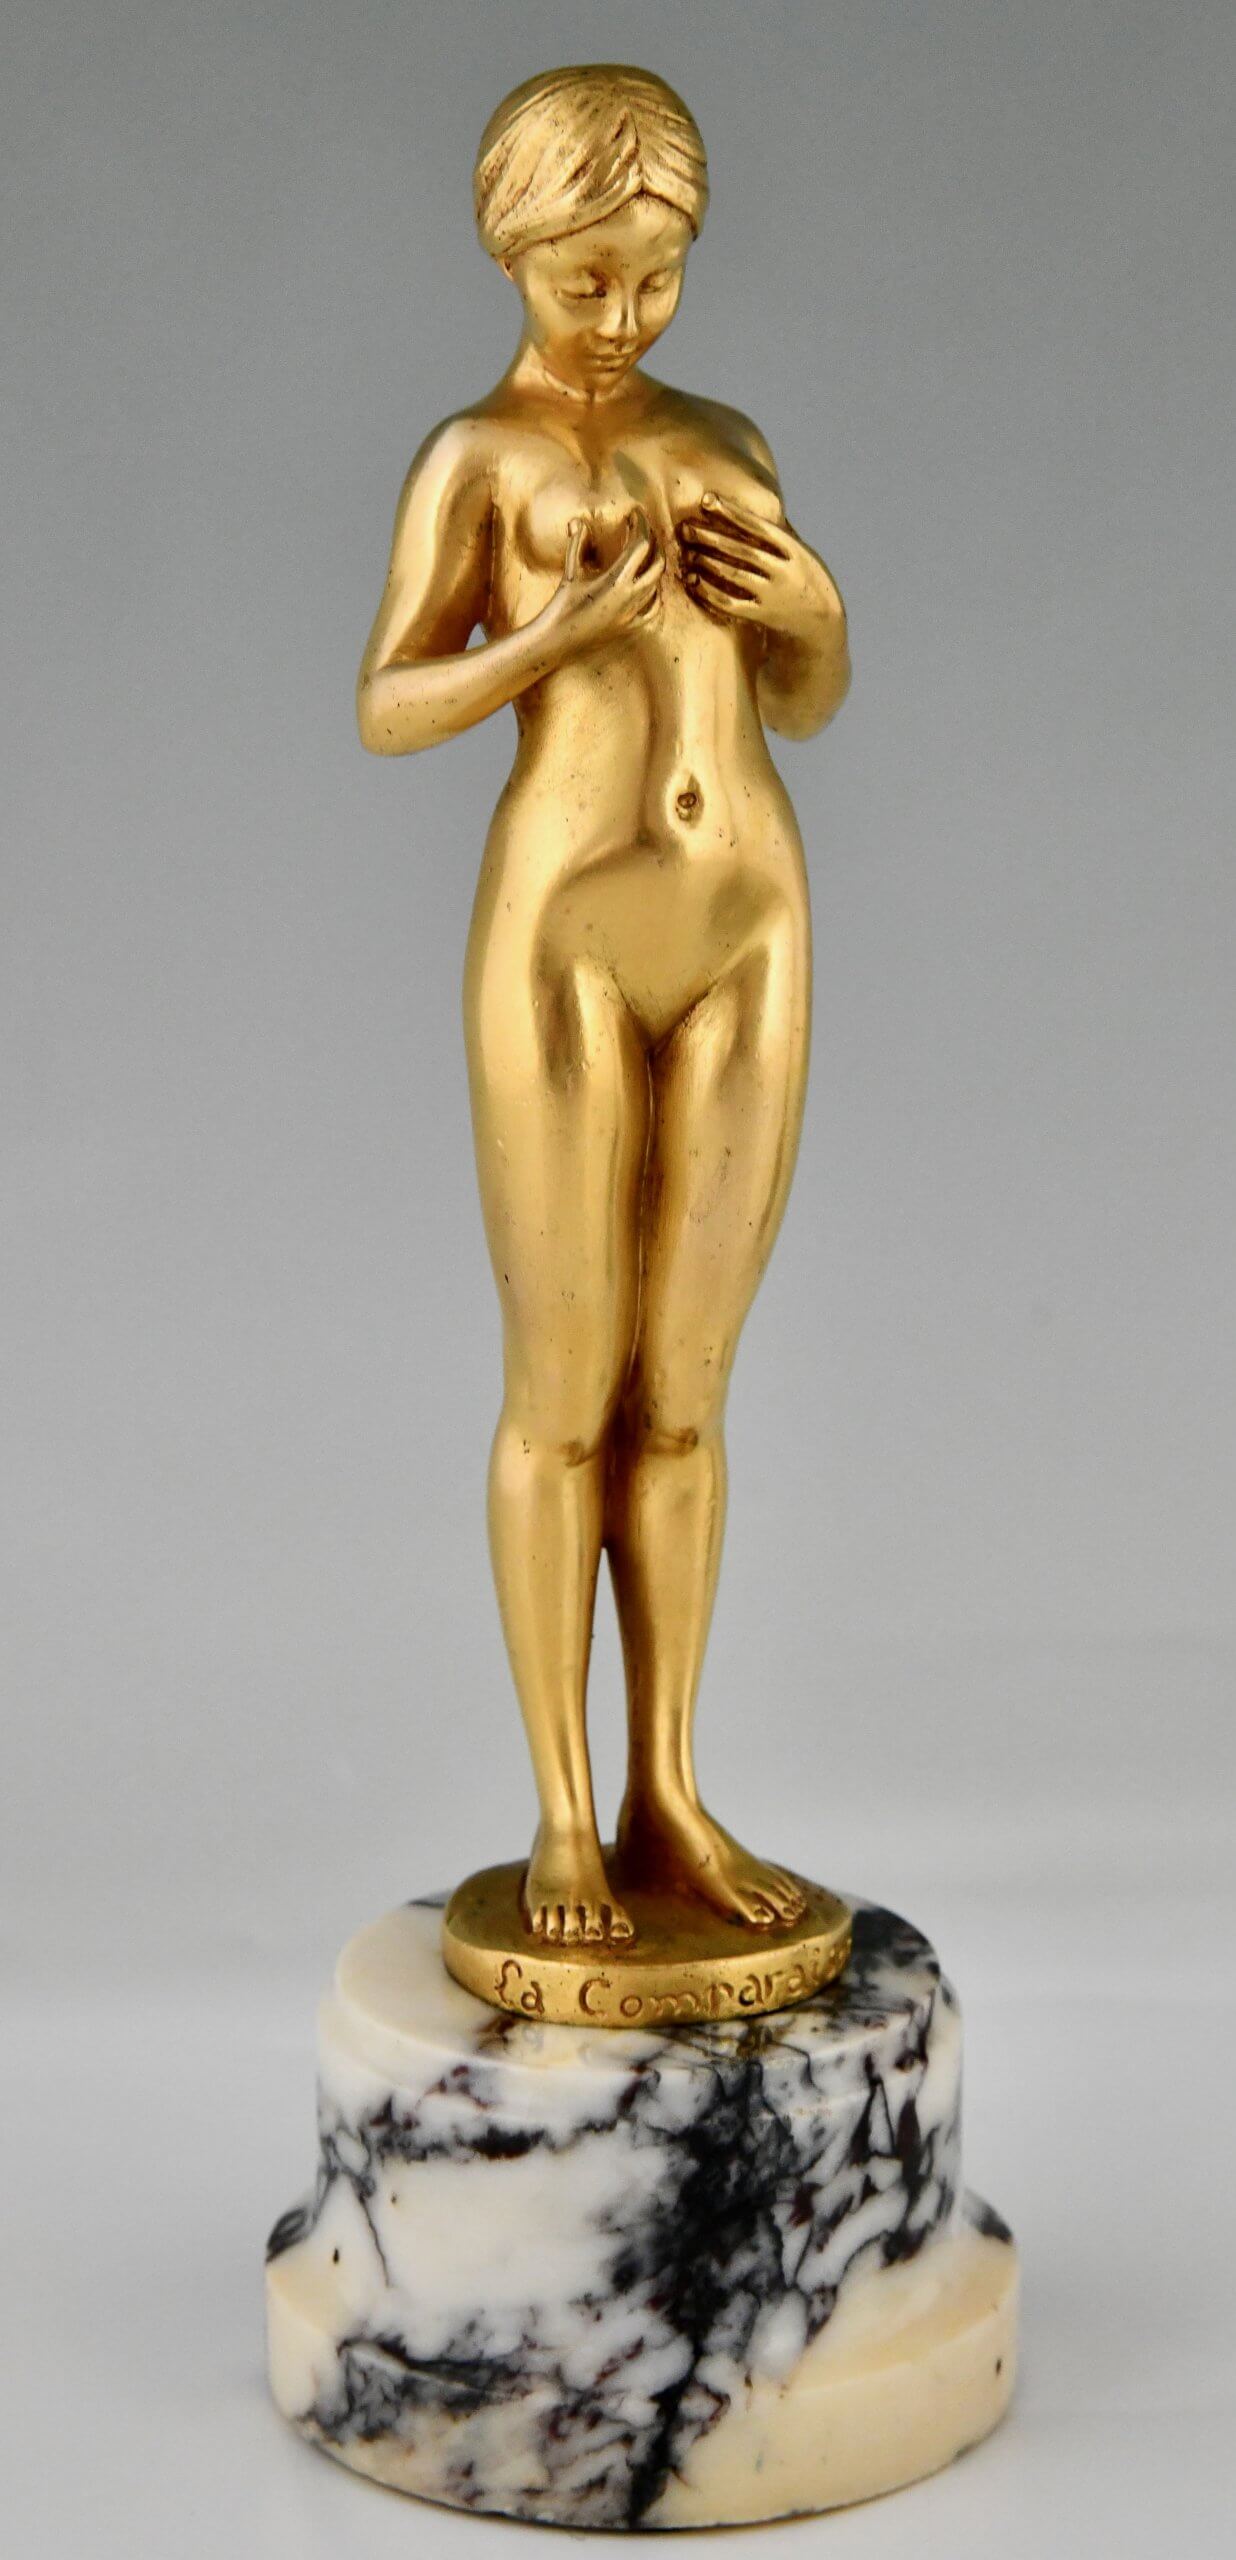 Paar Art Nouveau bronzen sculpturen naakte vrouw